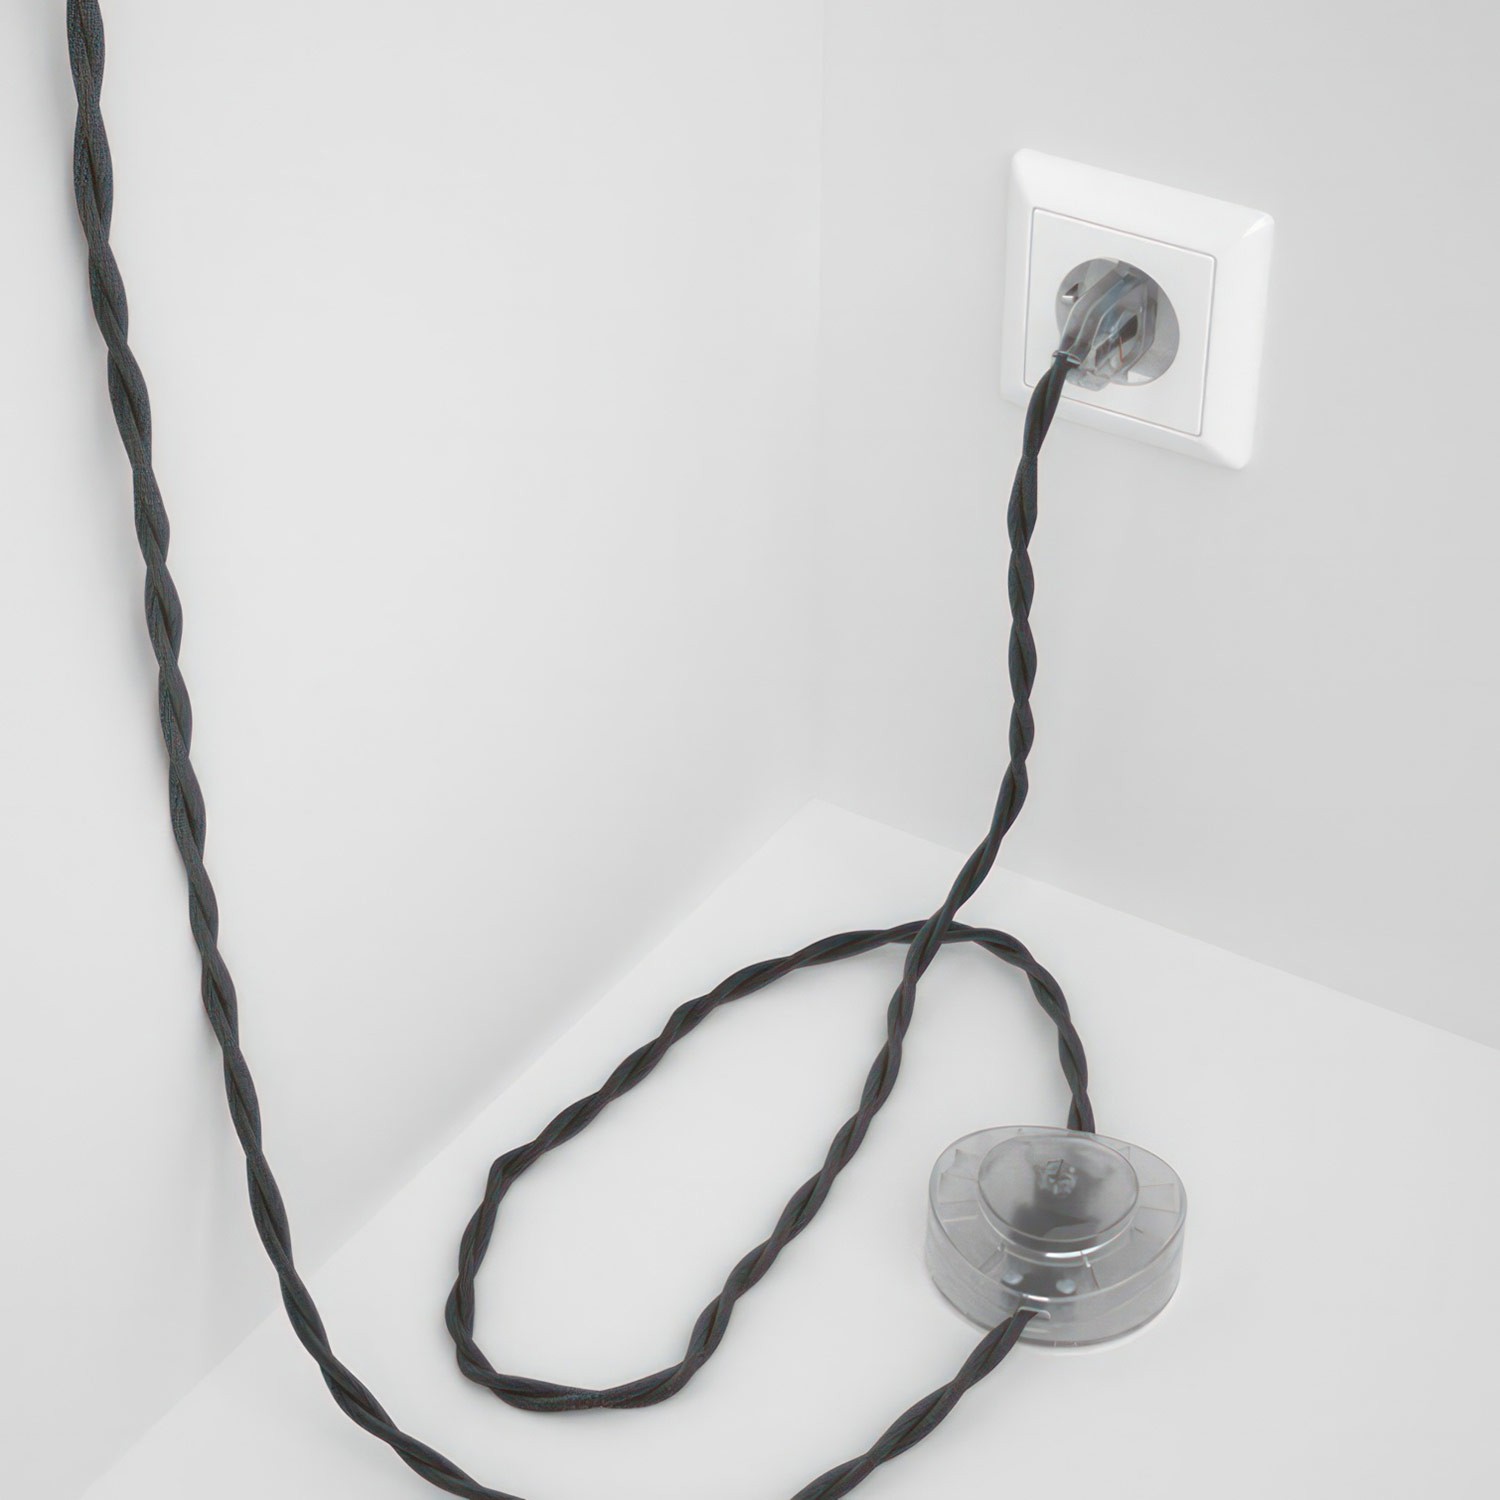 Cableado para lámpara de pie, cable TM26 Efecto Seda Gris Oscuro 3 m. Elige tu el color de la clavija y del interruptor!